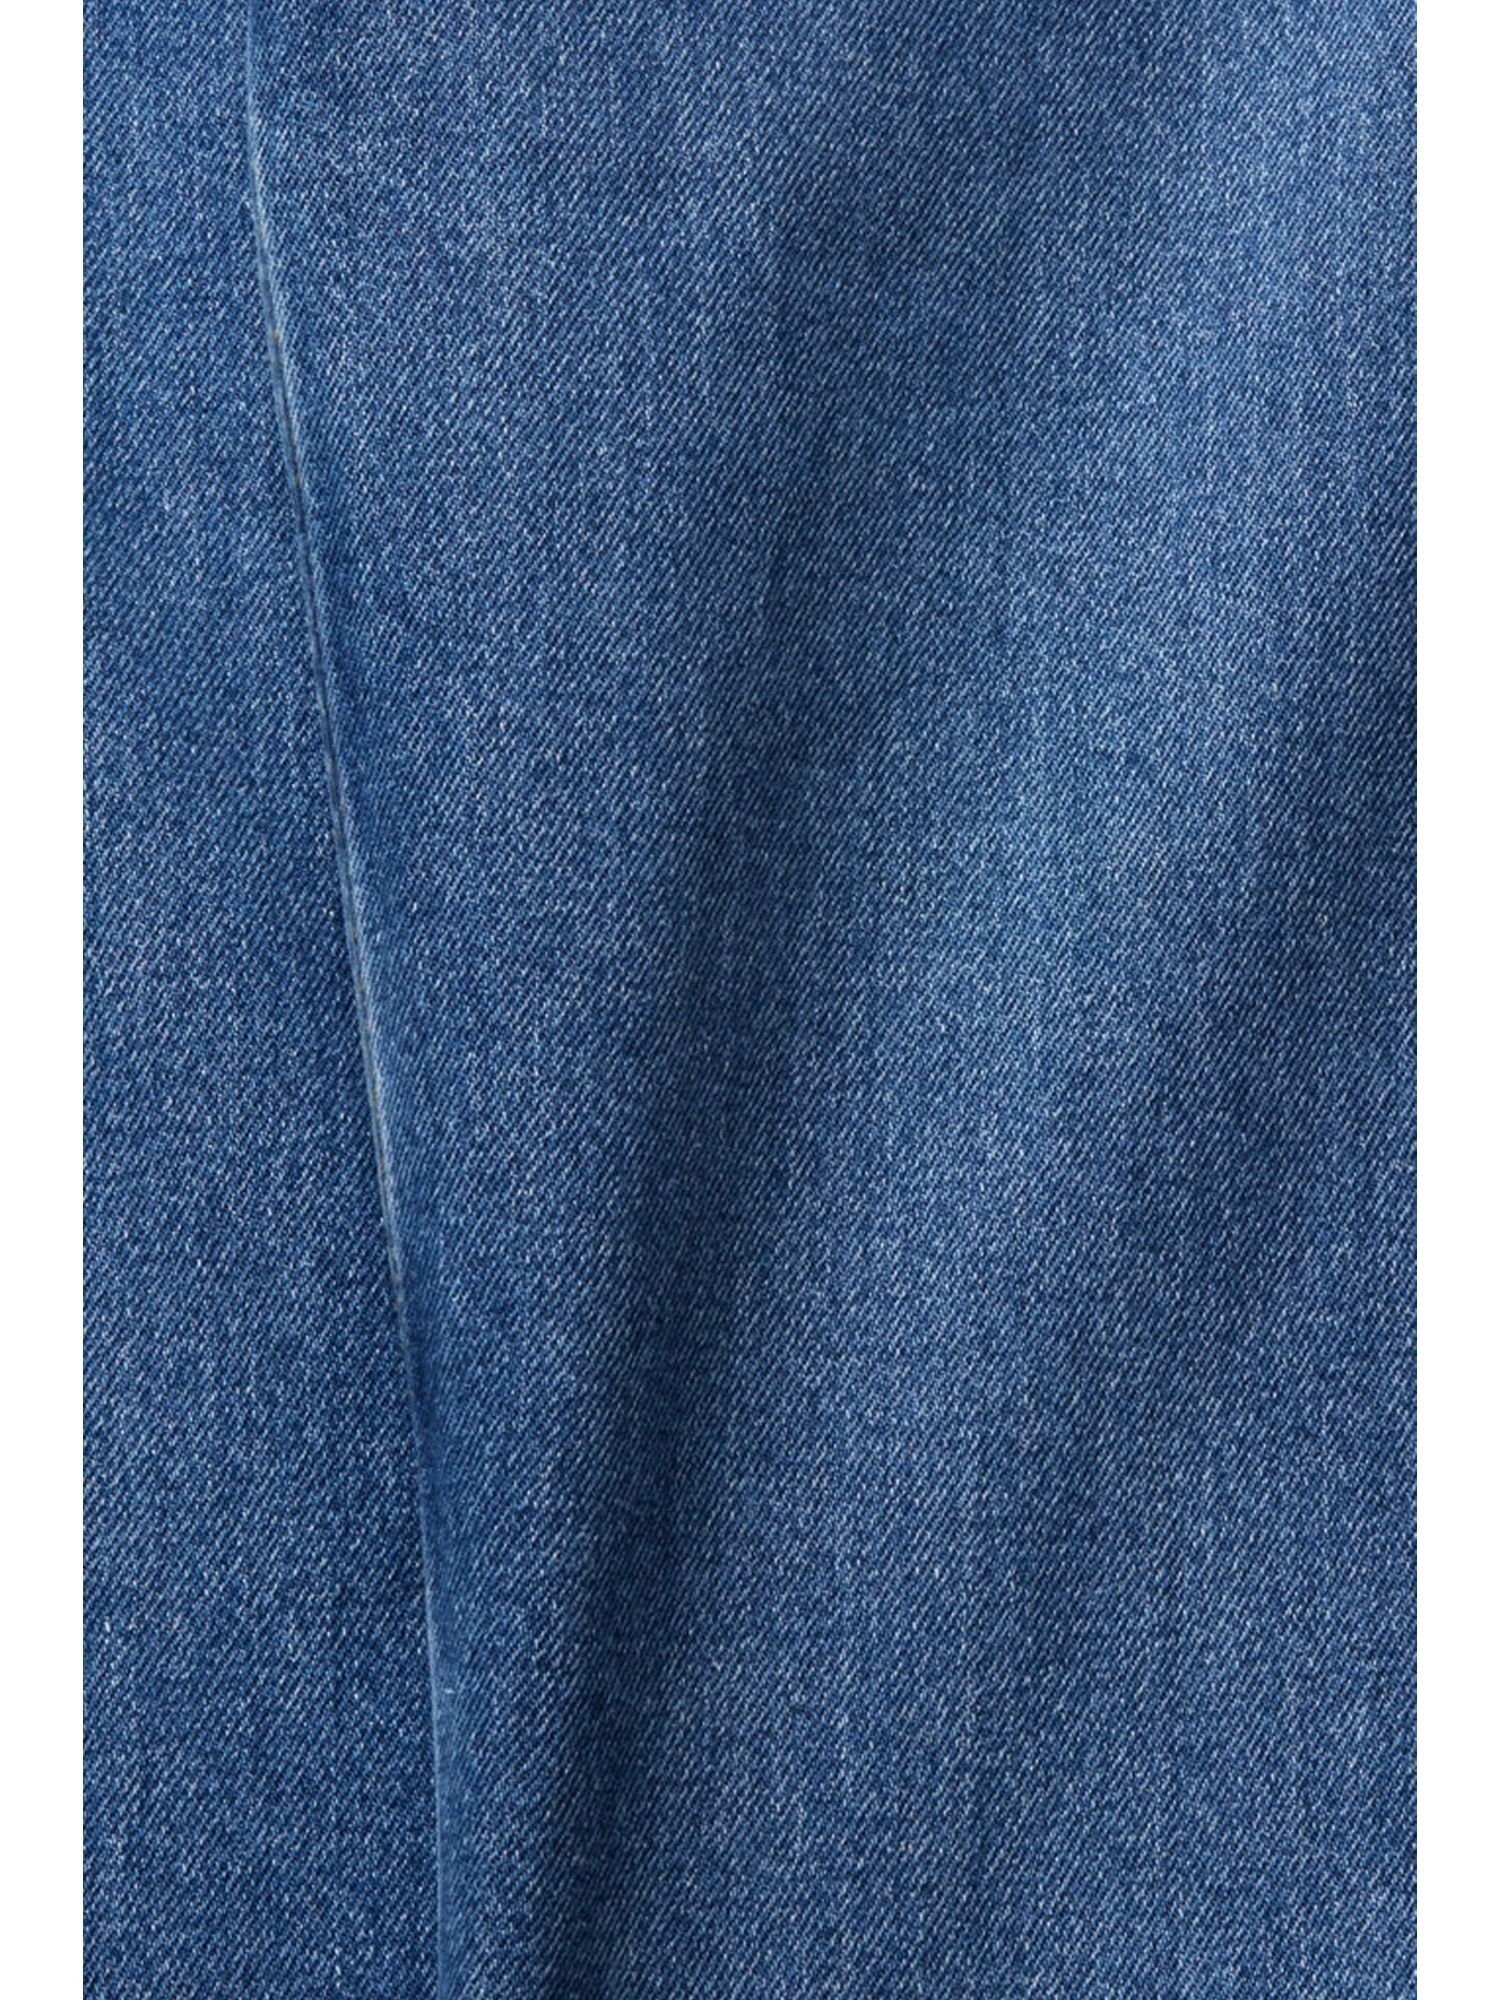 Esprit 7/8-Jeans Jeans mit und WASHED MEDIUM hohem BLUE Beinverlauf Bund geradem